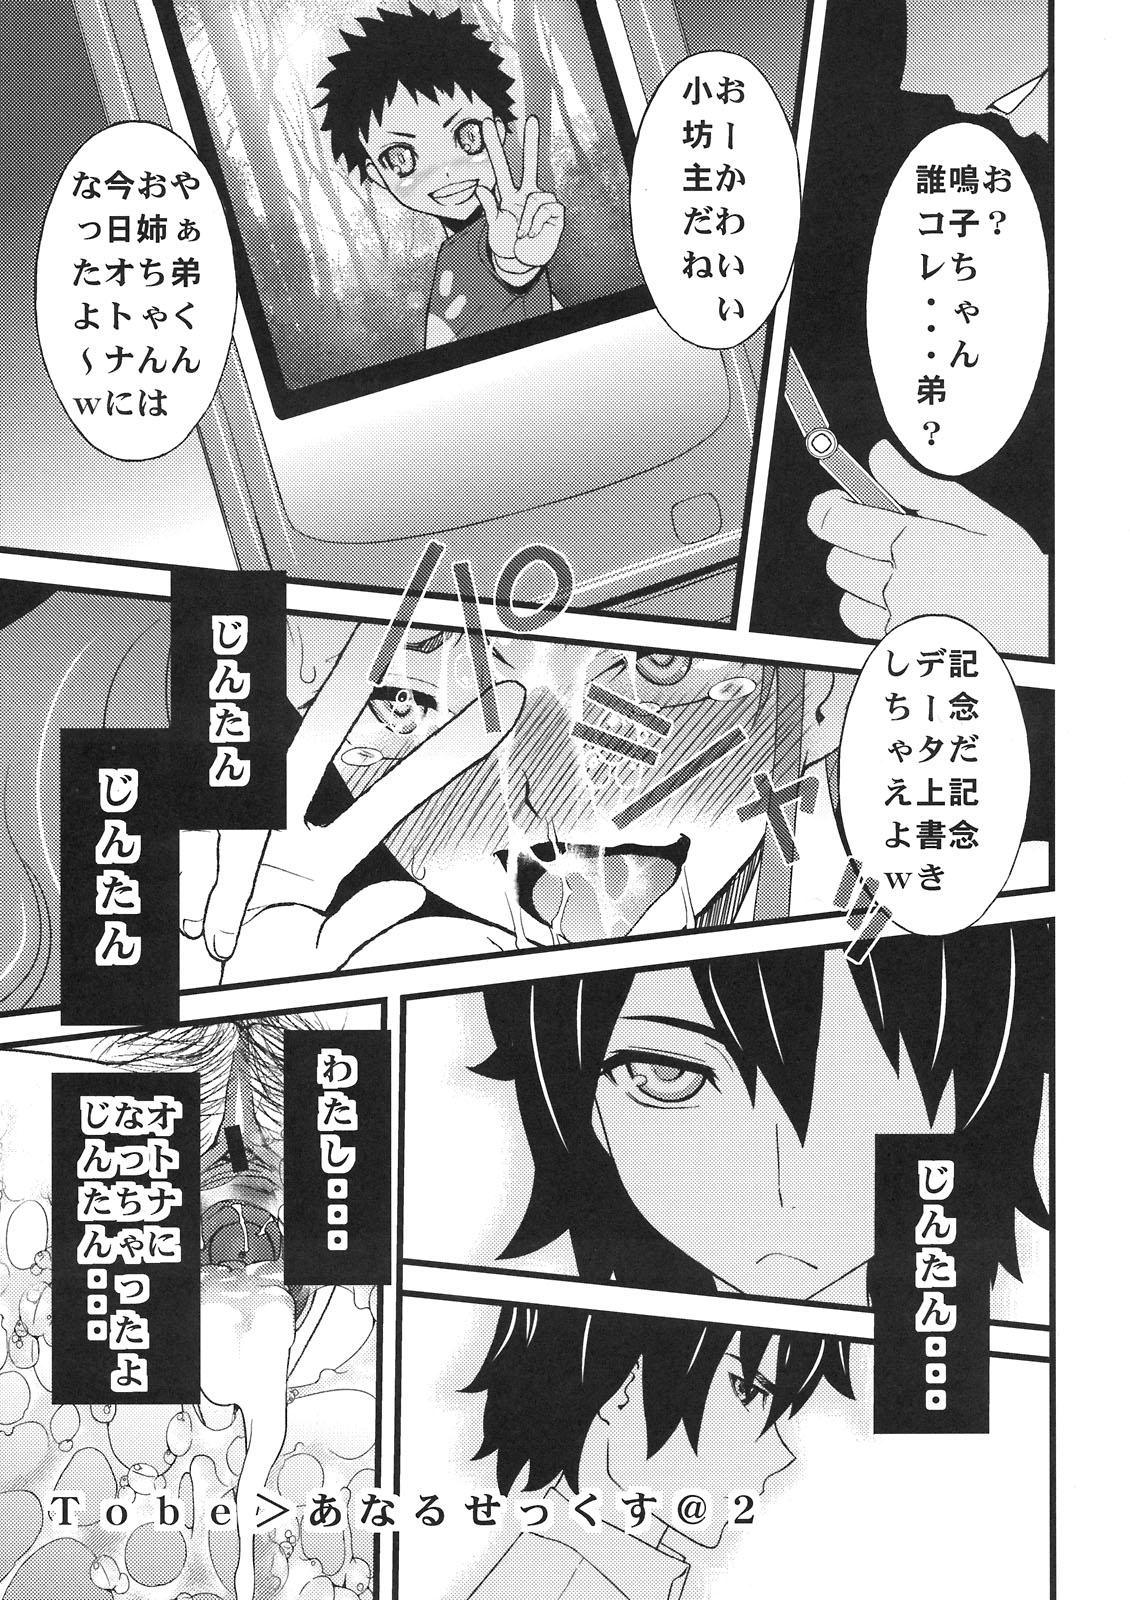 Male Anal Sex - Ano hi mita hana no namae wo bokutachi wa mada shiranai Amateur Blow Job - Page 25